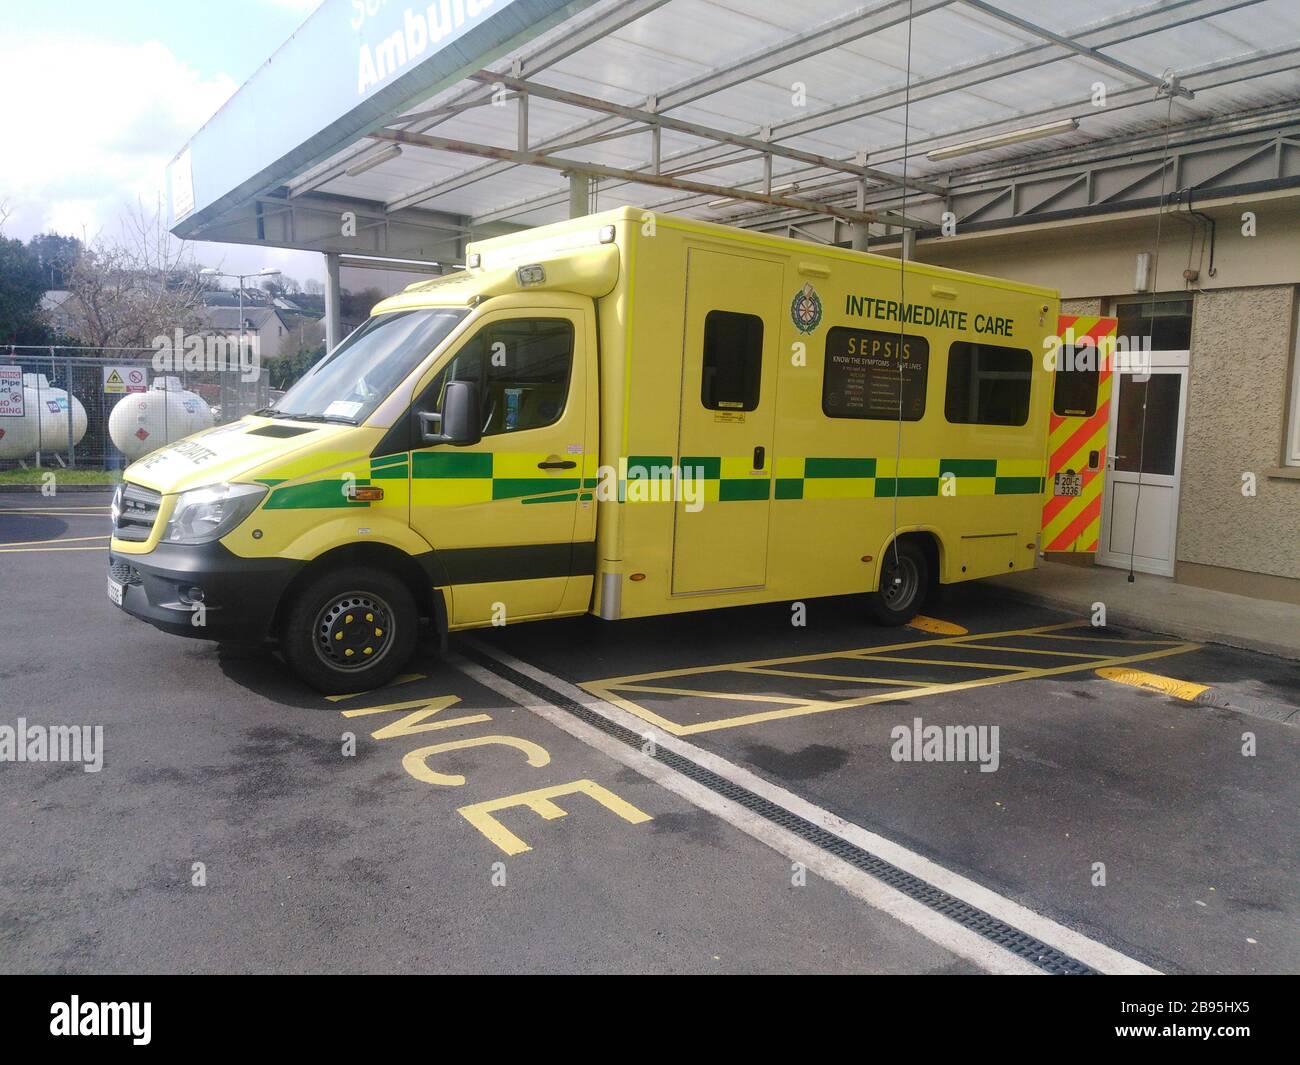 National Ambulance Service Intermediate Care Vehicle, Bantry Ambulance Base, Bantry, West Cork, Ireland Stock Photo